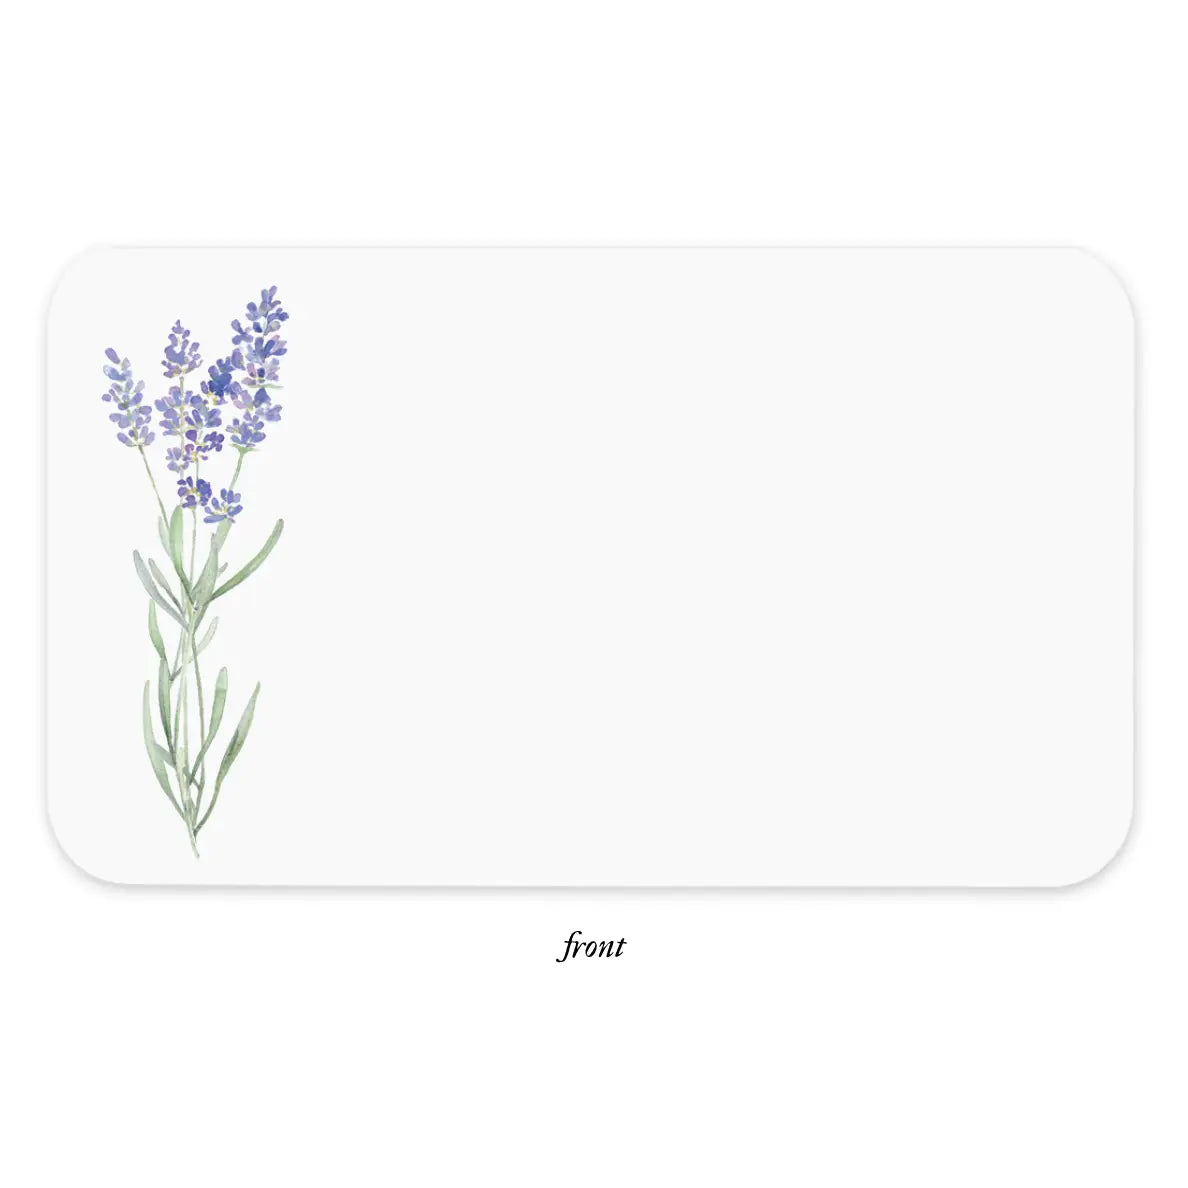 Lavender Little Notes